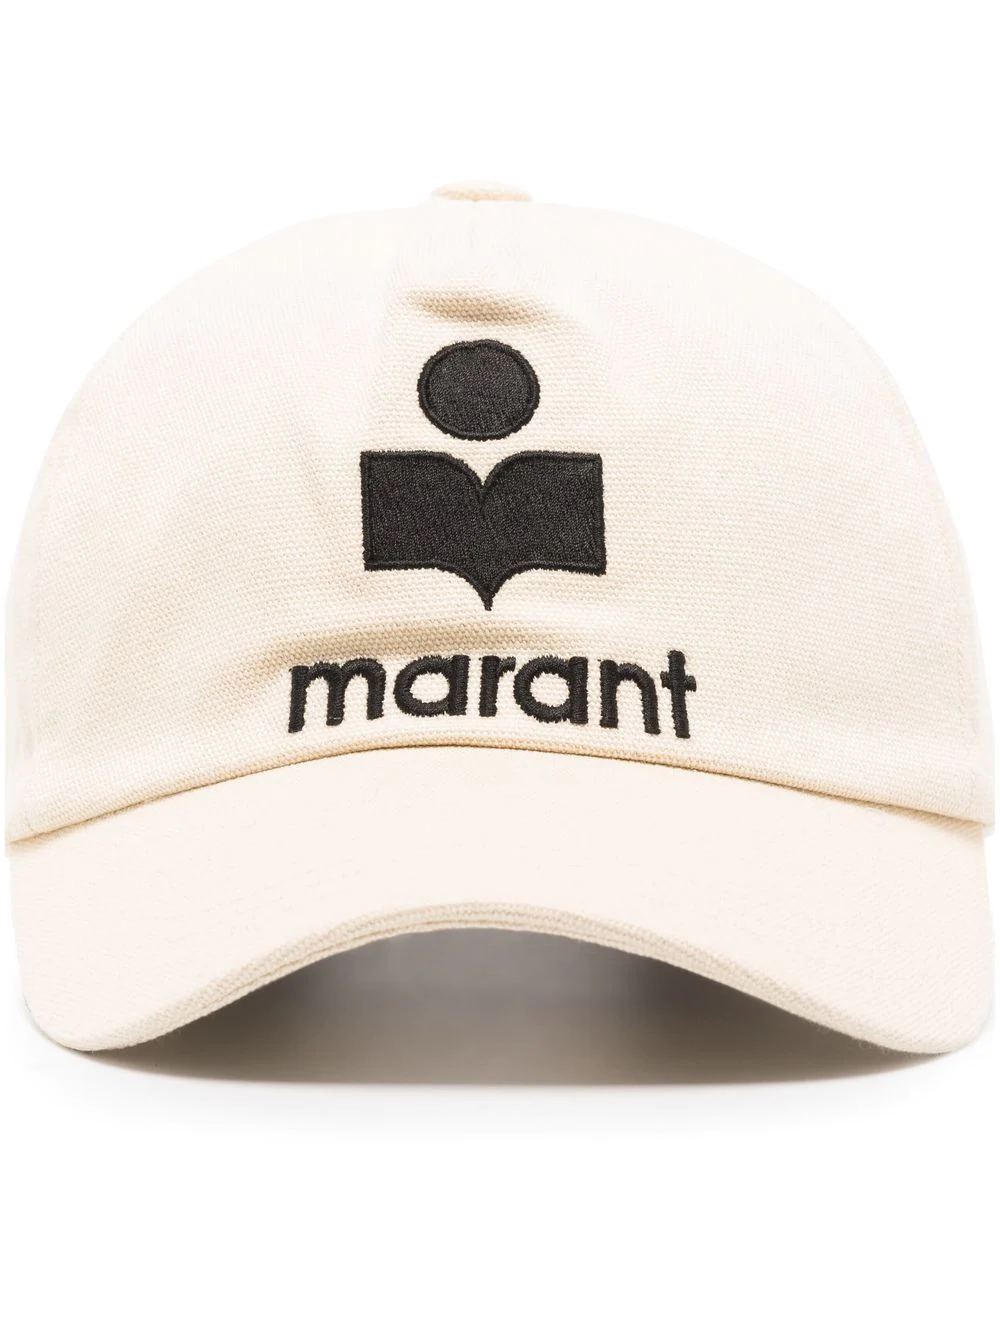 Isabel Marant
Tyron logo-embroidered baseball cap